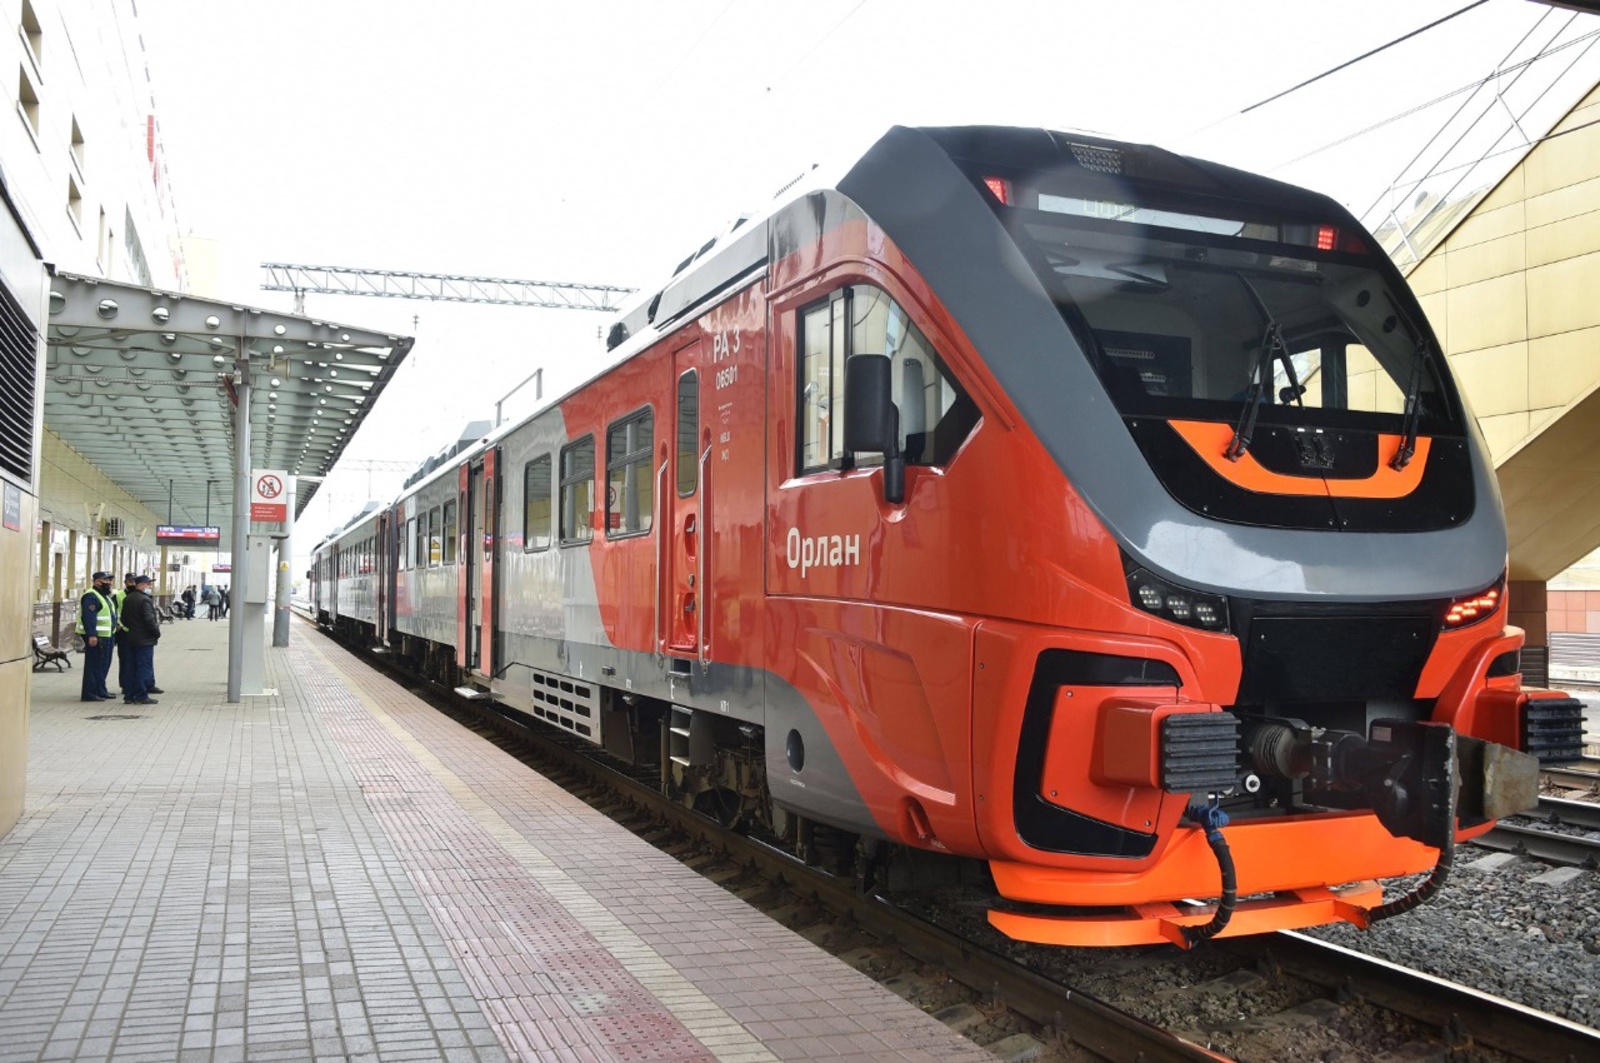 Сегодня поезд «Орлан» наконец соединил Уфу и Оренбург